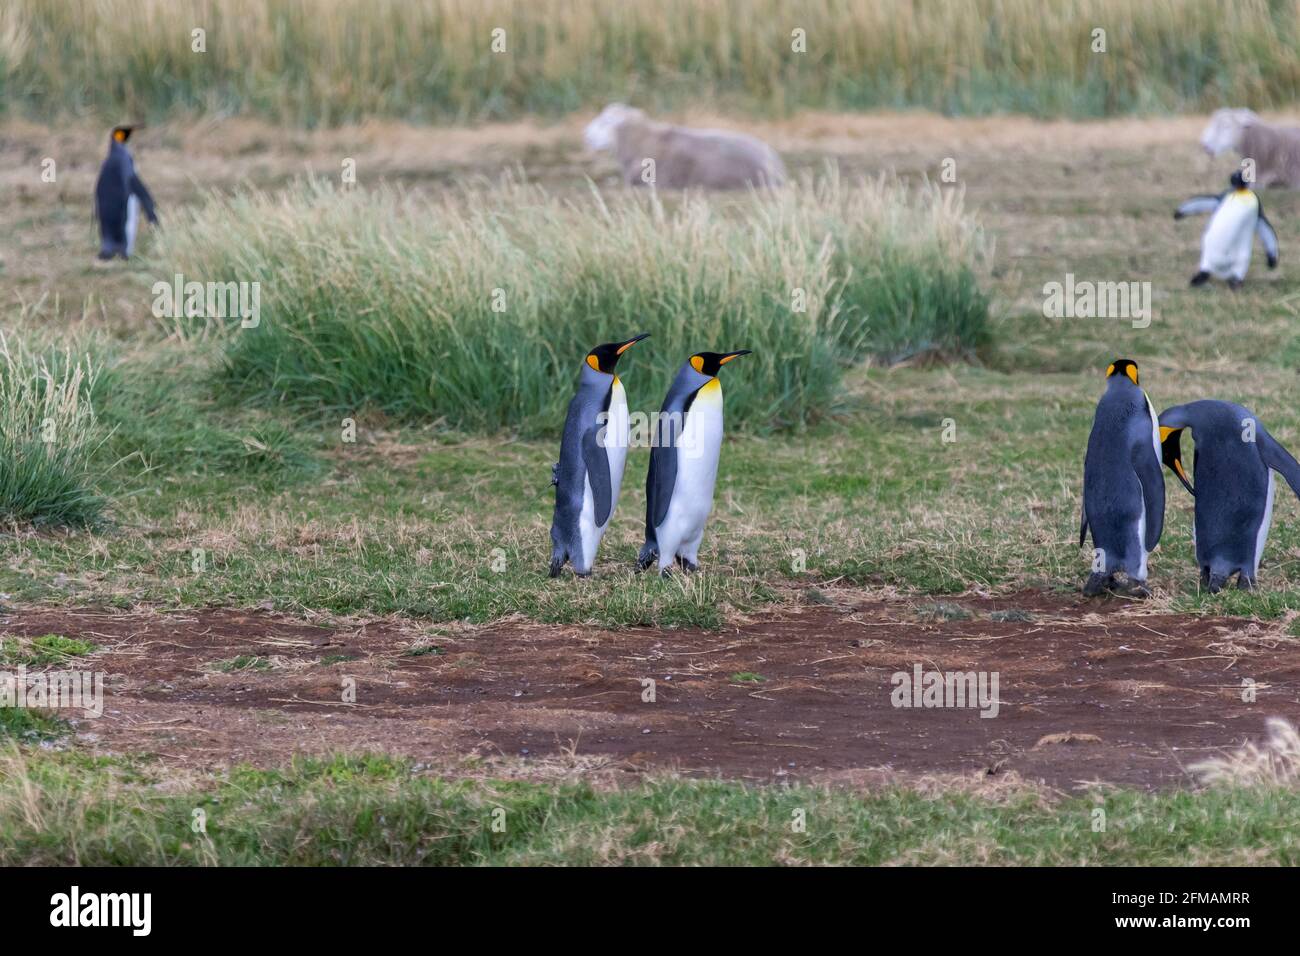 King penguins (Aptenodytes patagonicus) on Tierra del Fuego, Parque Pinguino Rey, Tierra del Fuego, Chile Stock Photo